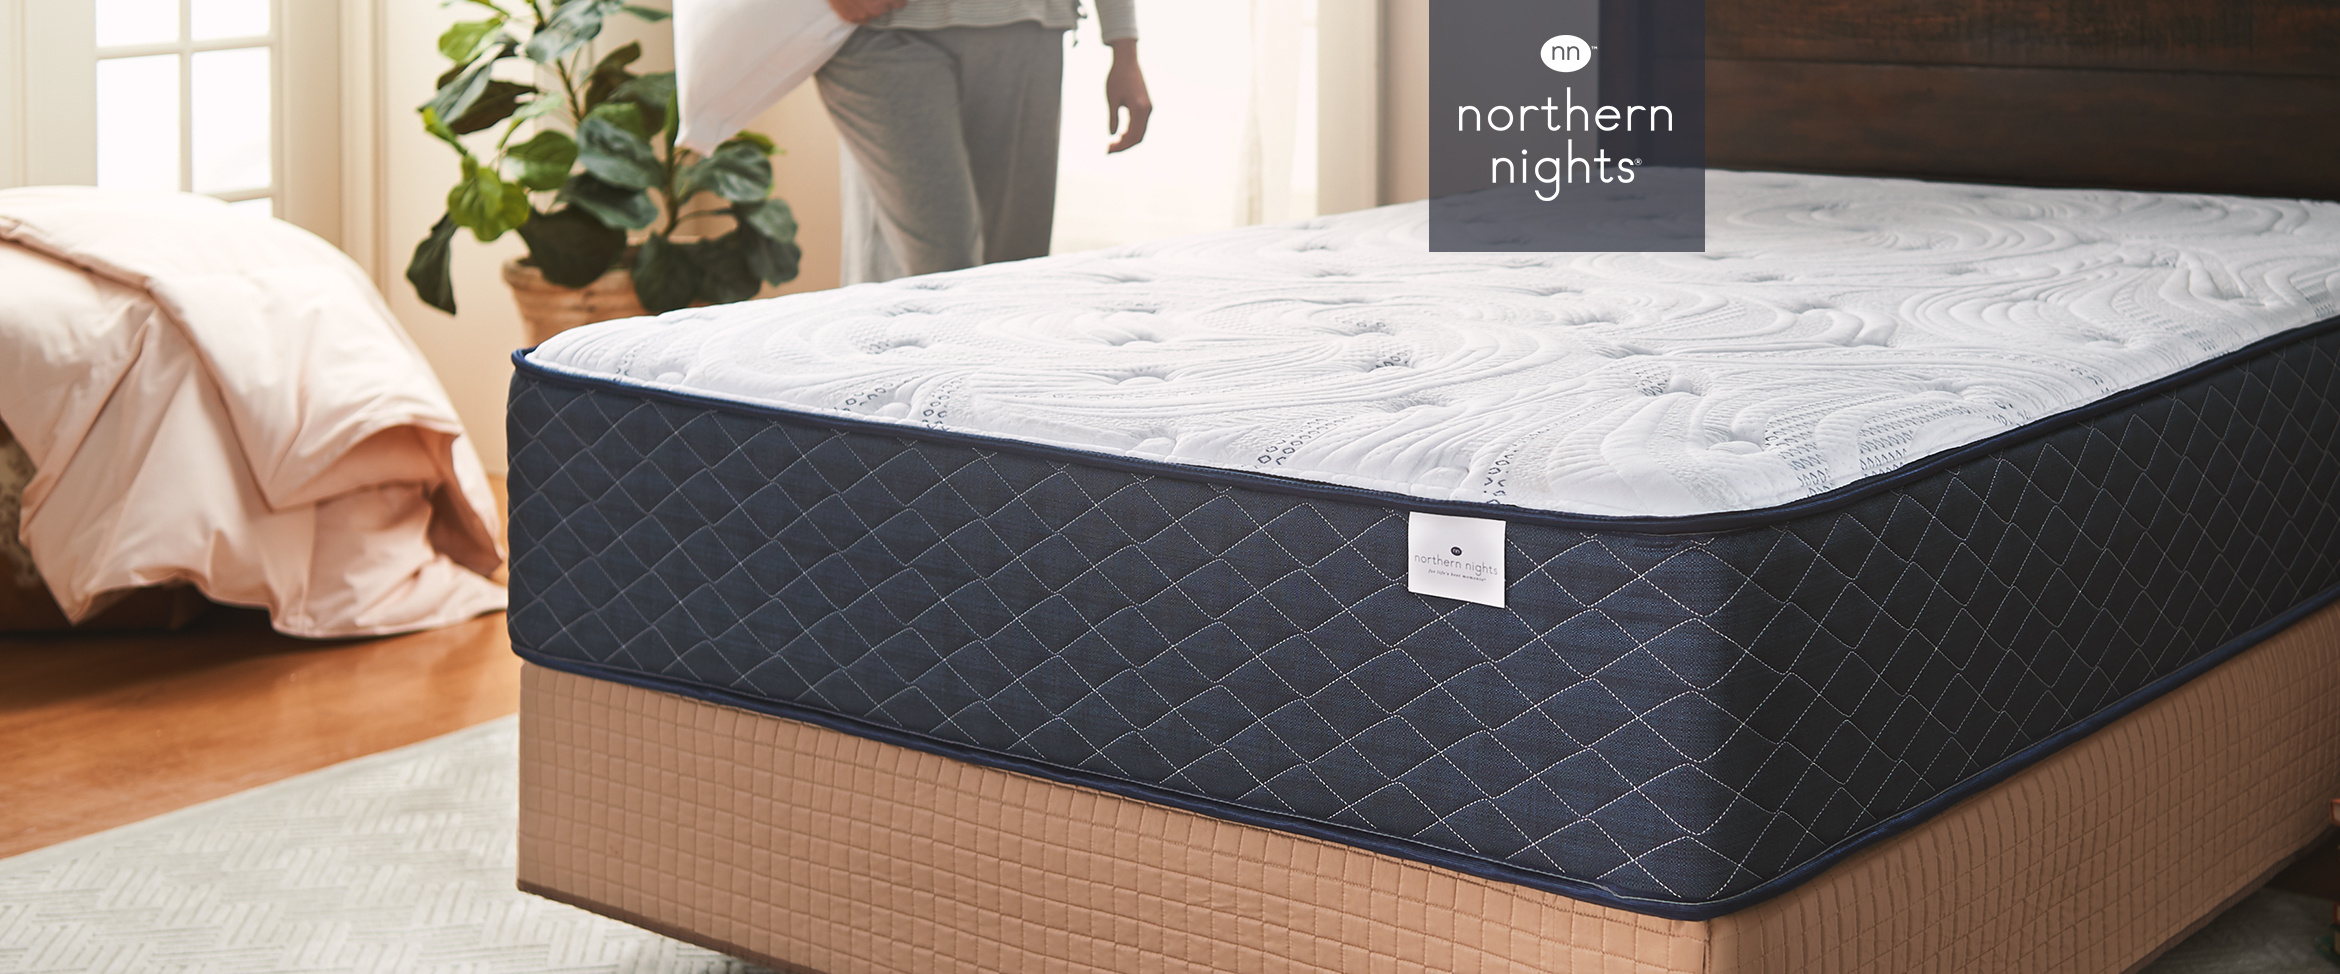 northern nights supreme hybrid mattress